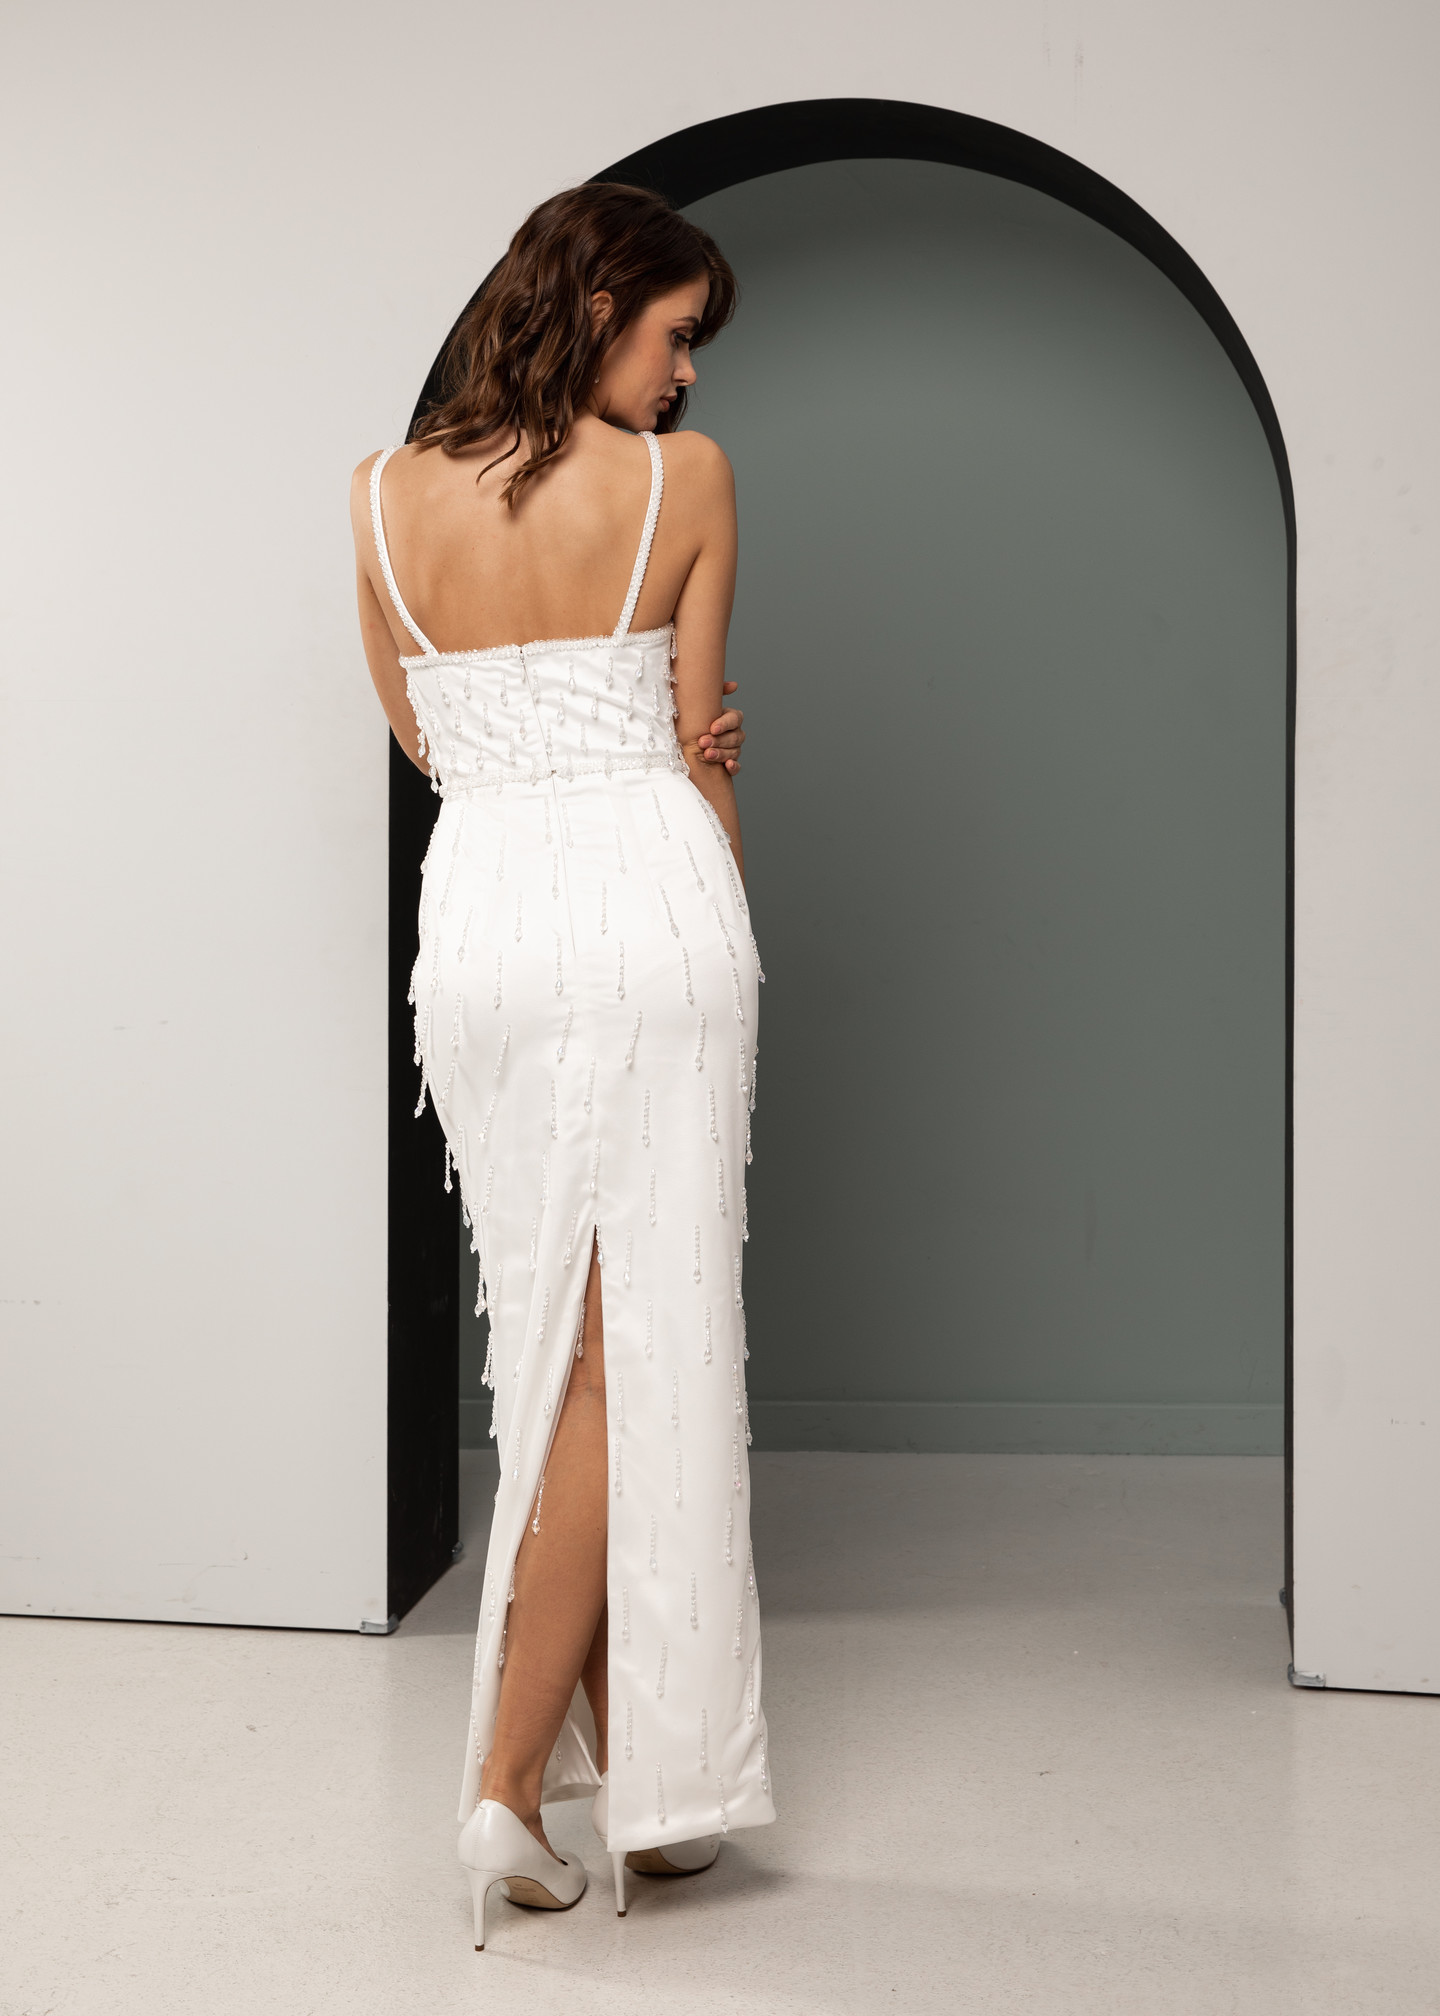 Платье Франческа, 2021, одежда, платье, свадебное, молочно-белый, вышивка, прямой силуэт